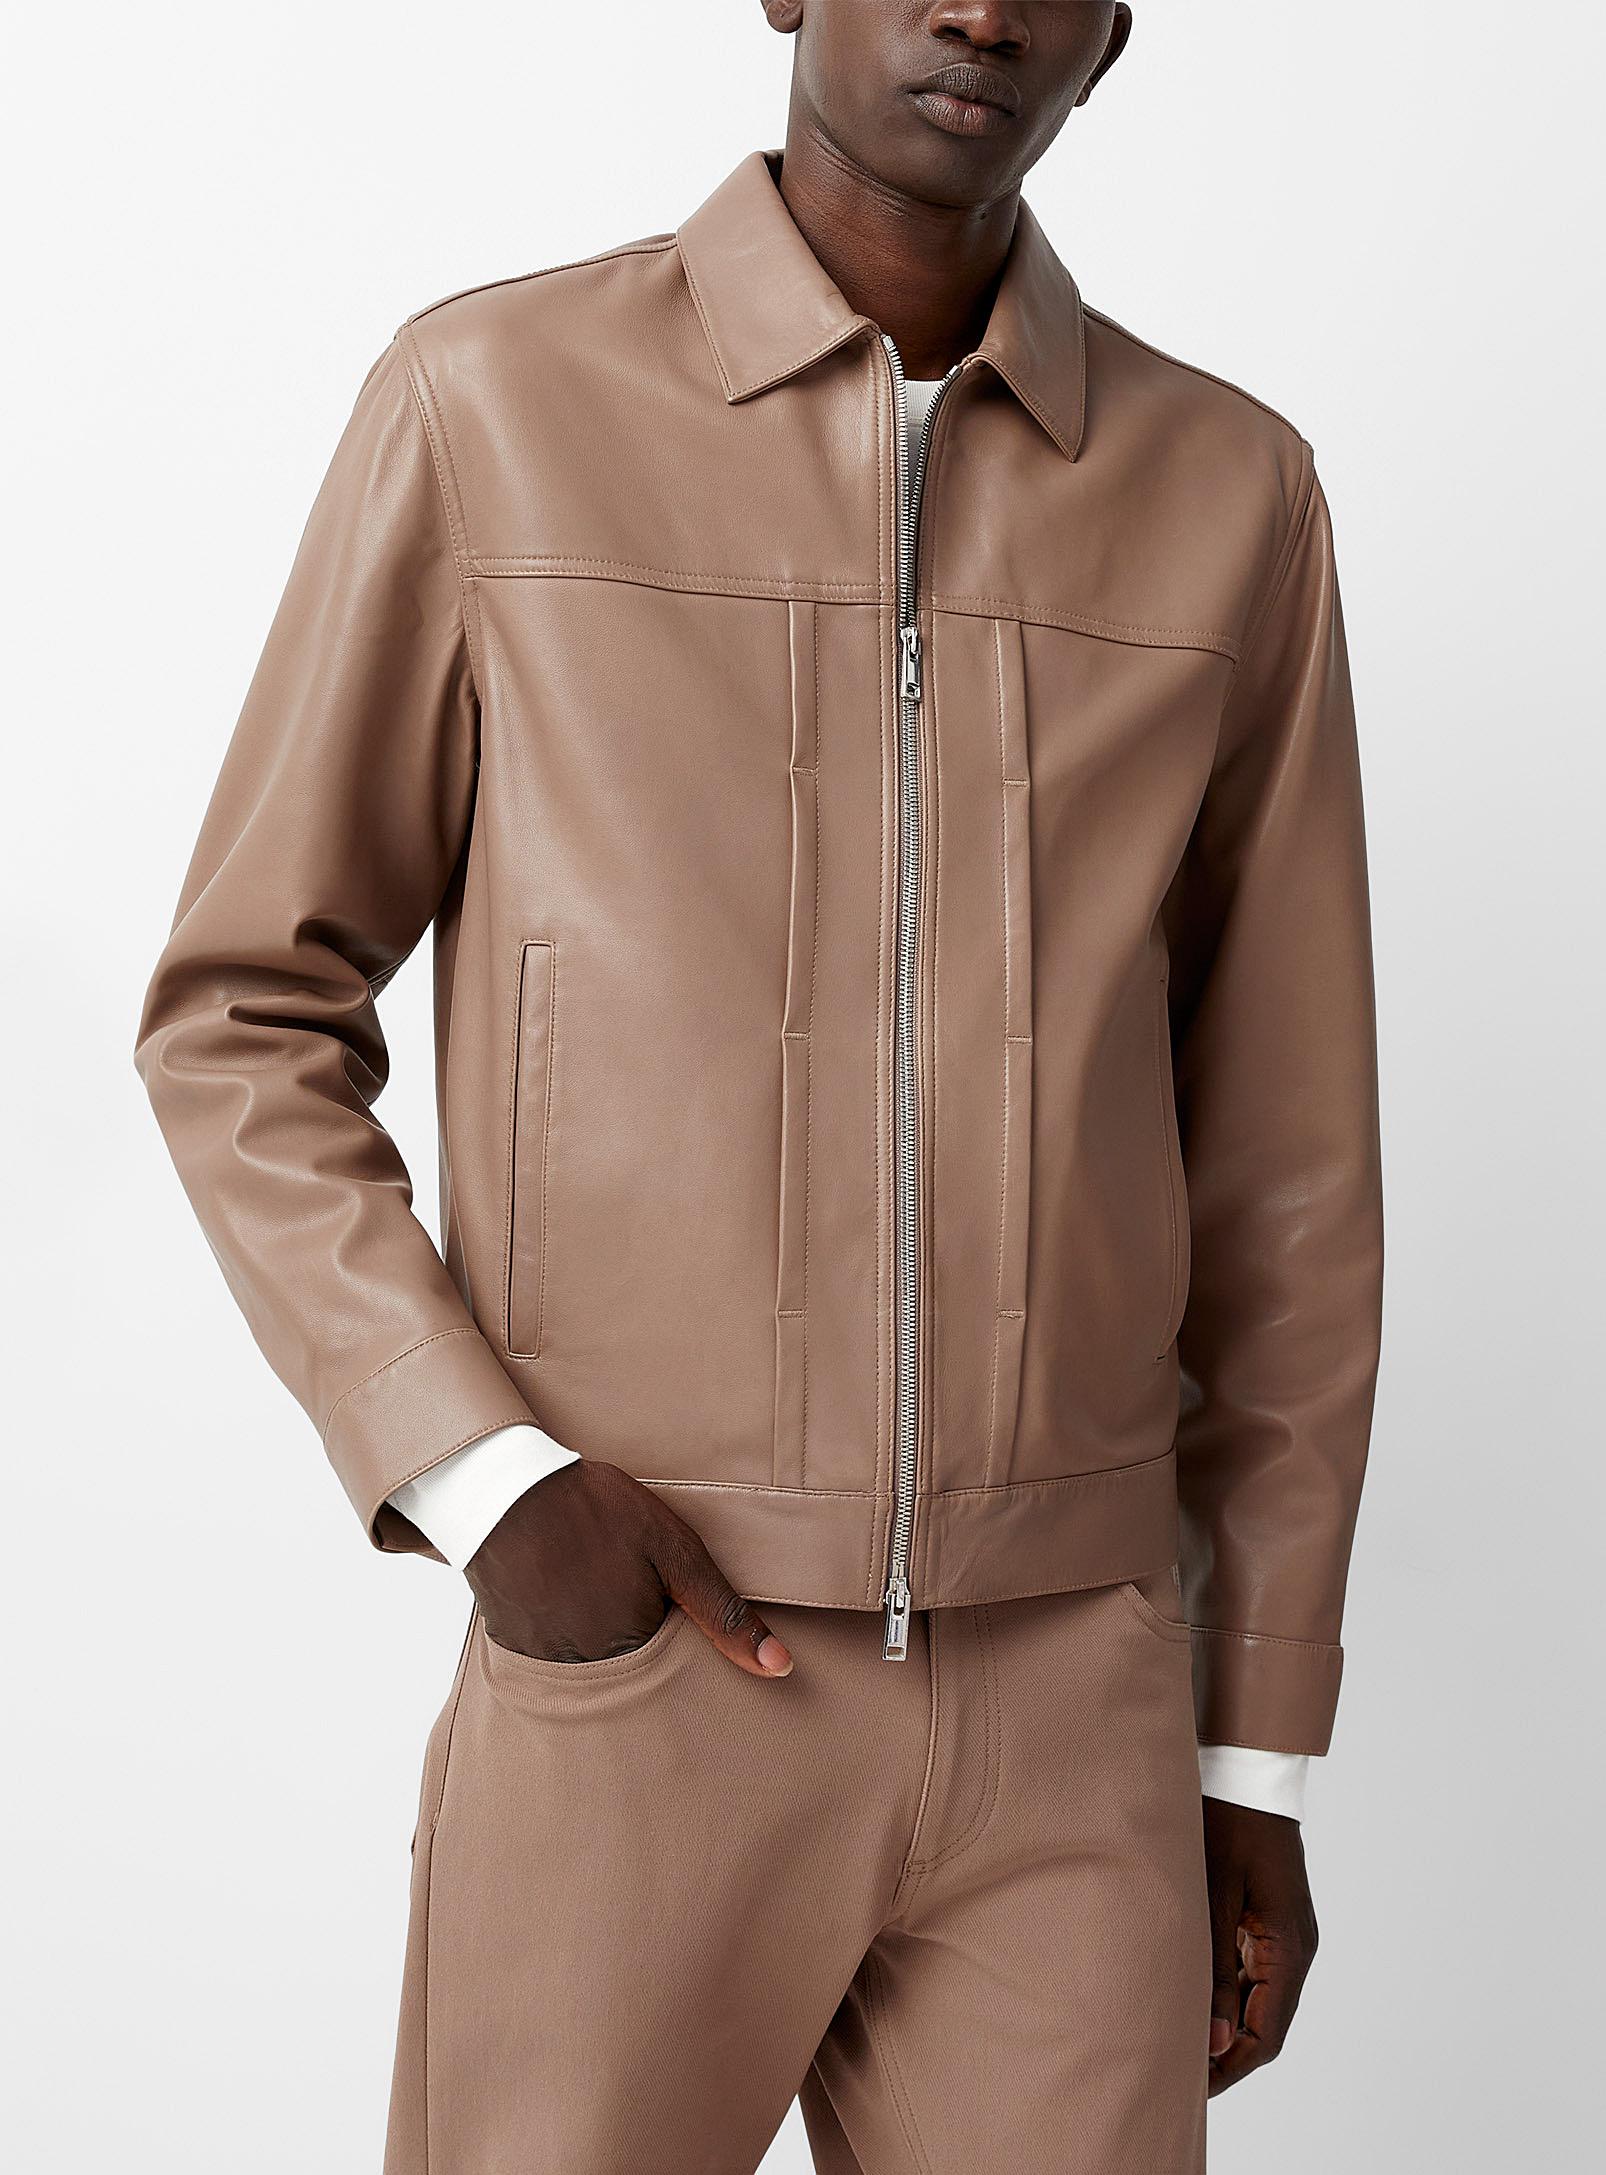 Theory Leather Varsity Jacket